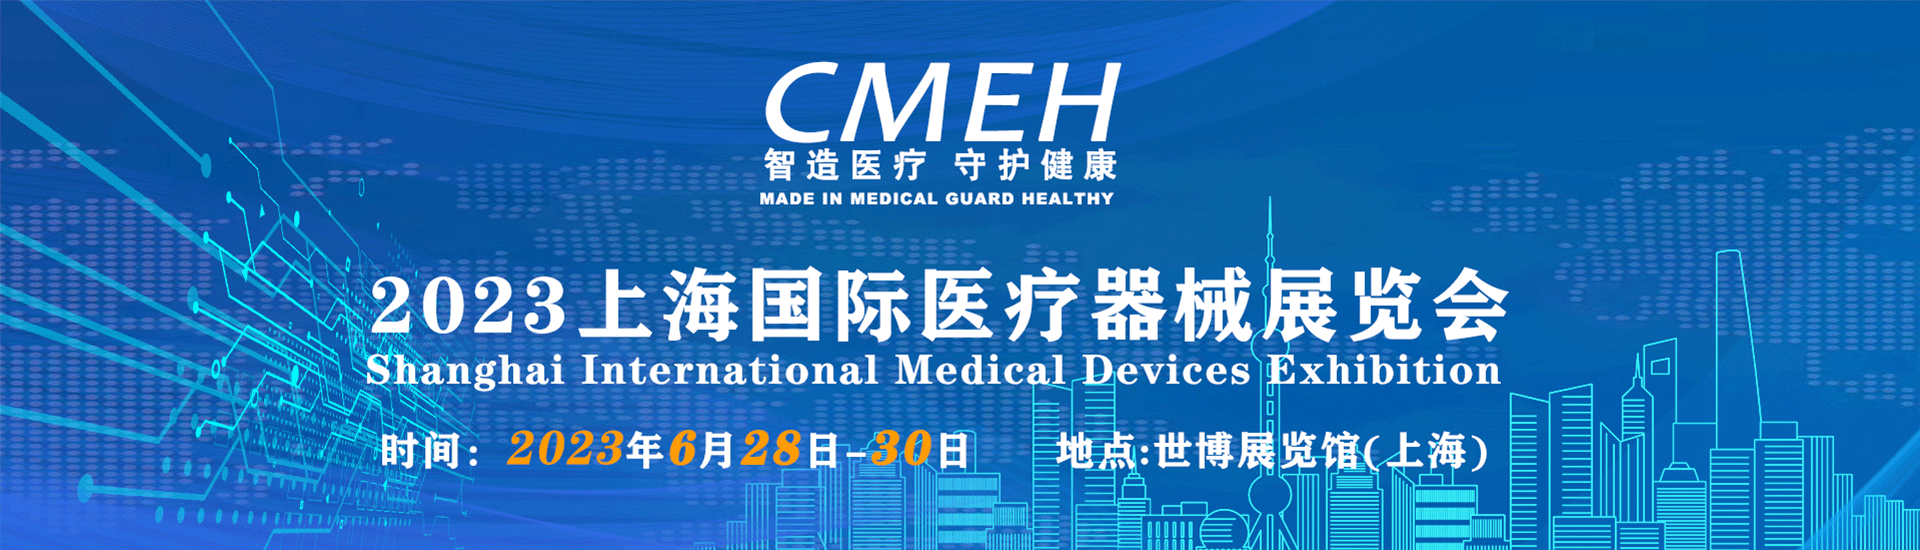 中国国际医疗器械展会-2024年医学会议时间-全国医疗器械展会时间和地点